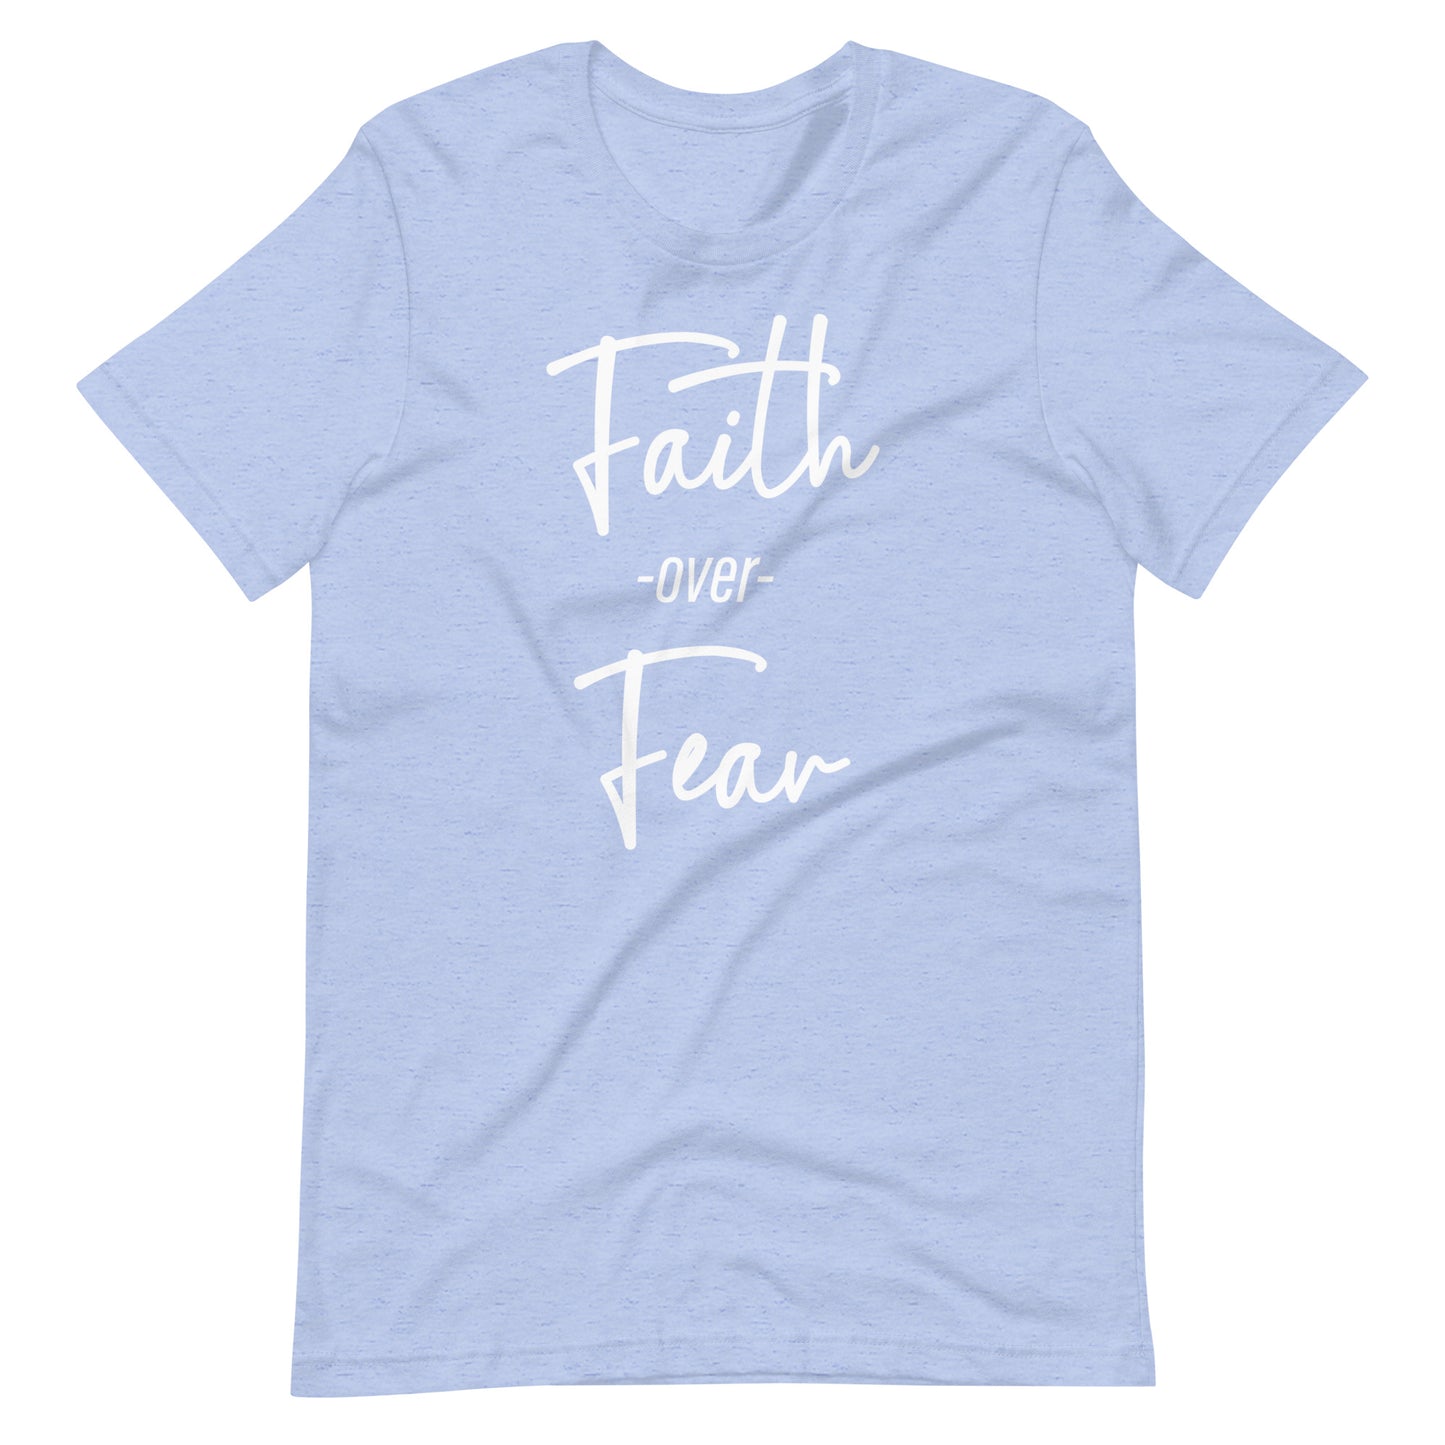 Faith Over Fear Script Unisex t-shirt